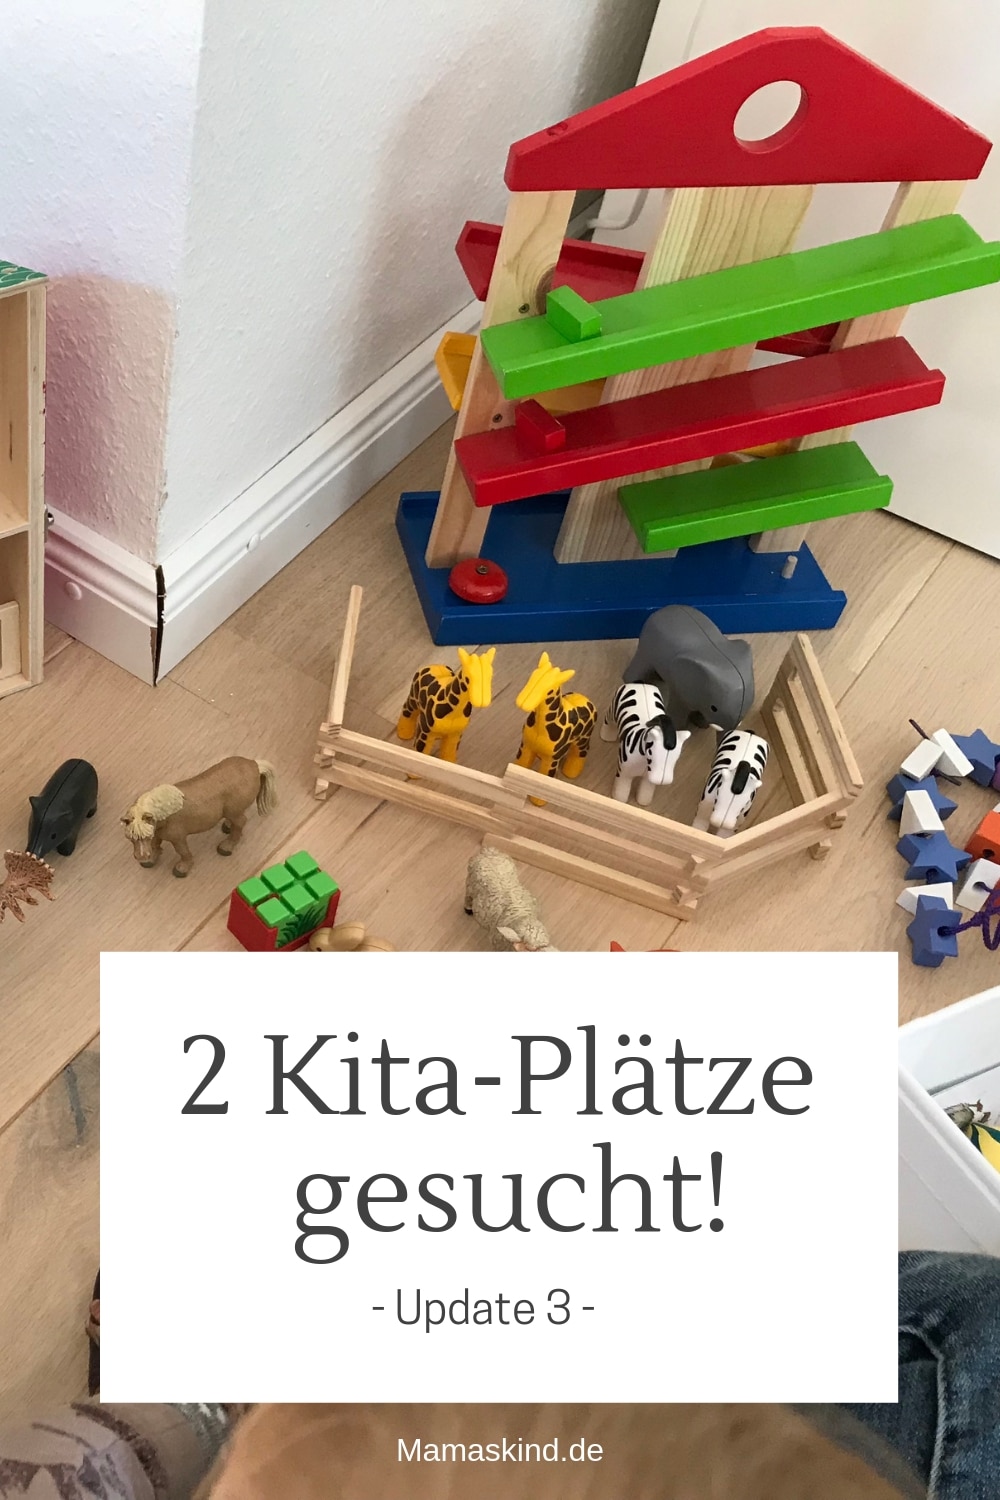 Kita-Plätze gesucht! Seit einem halben Jahr suchen wir schon! | Mehr Infos auf Mamaskind.de